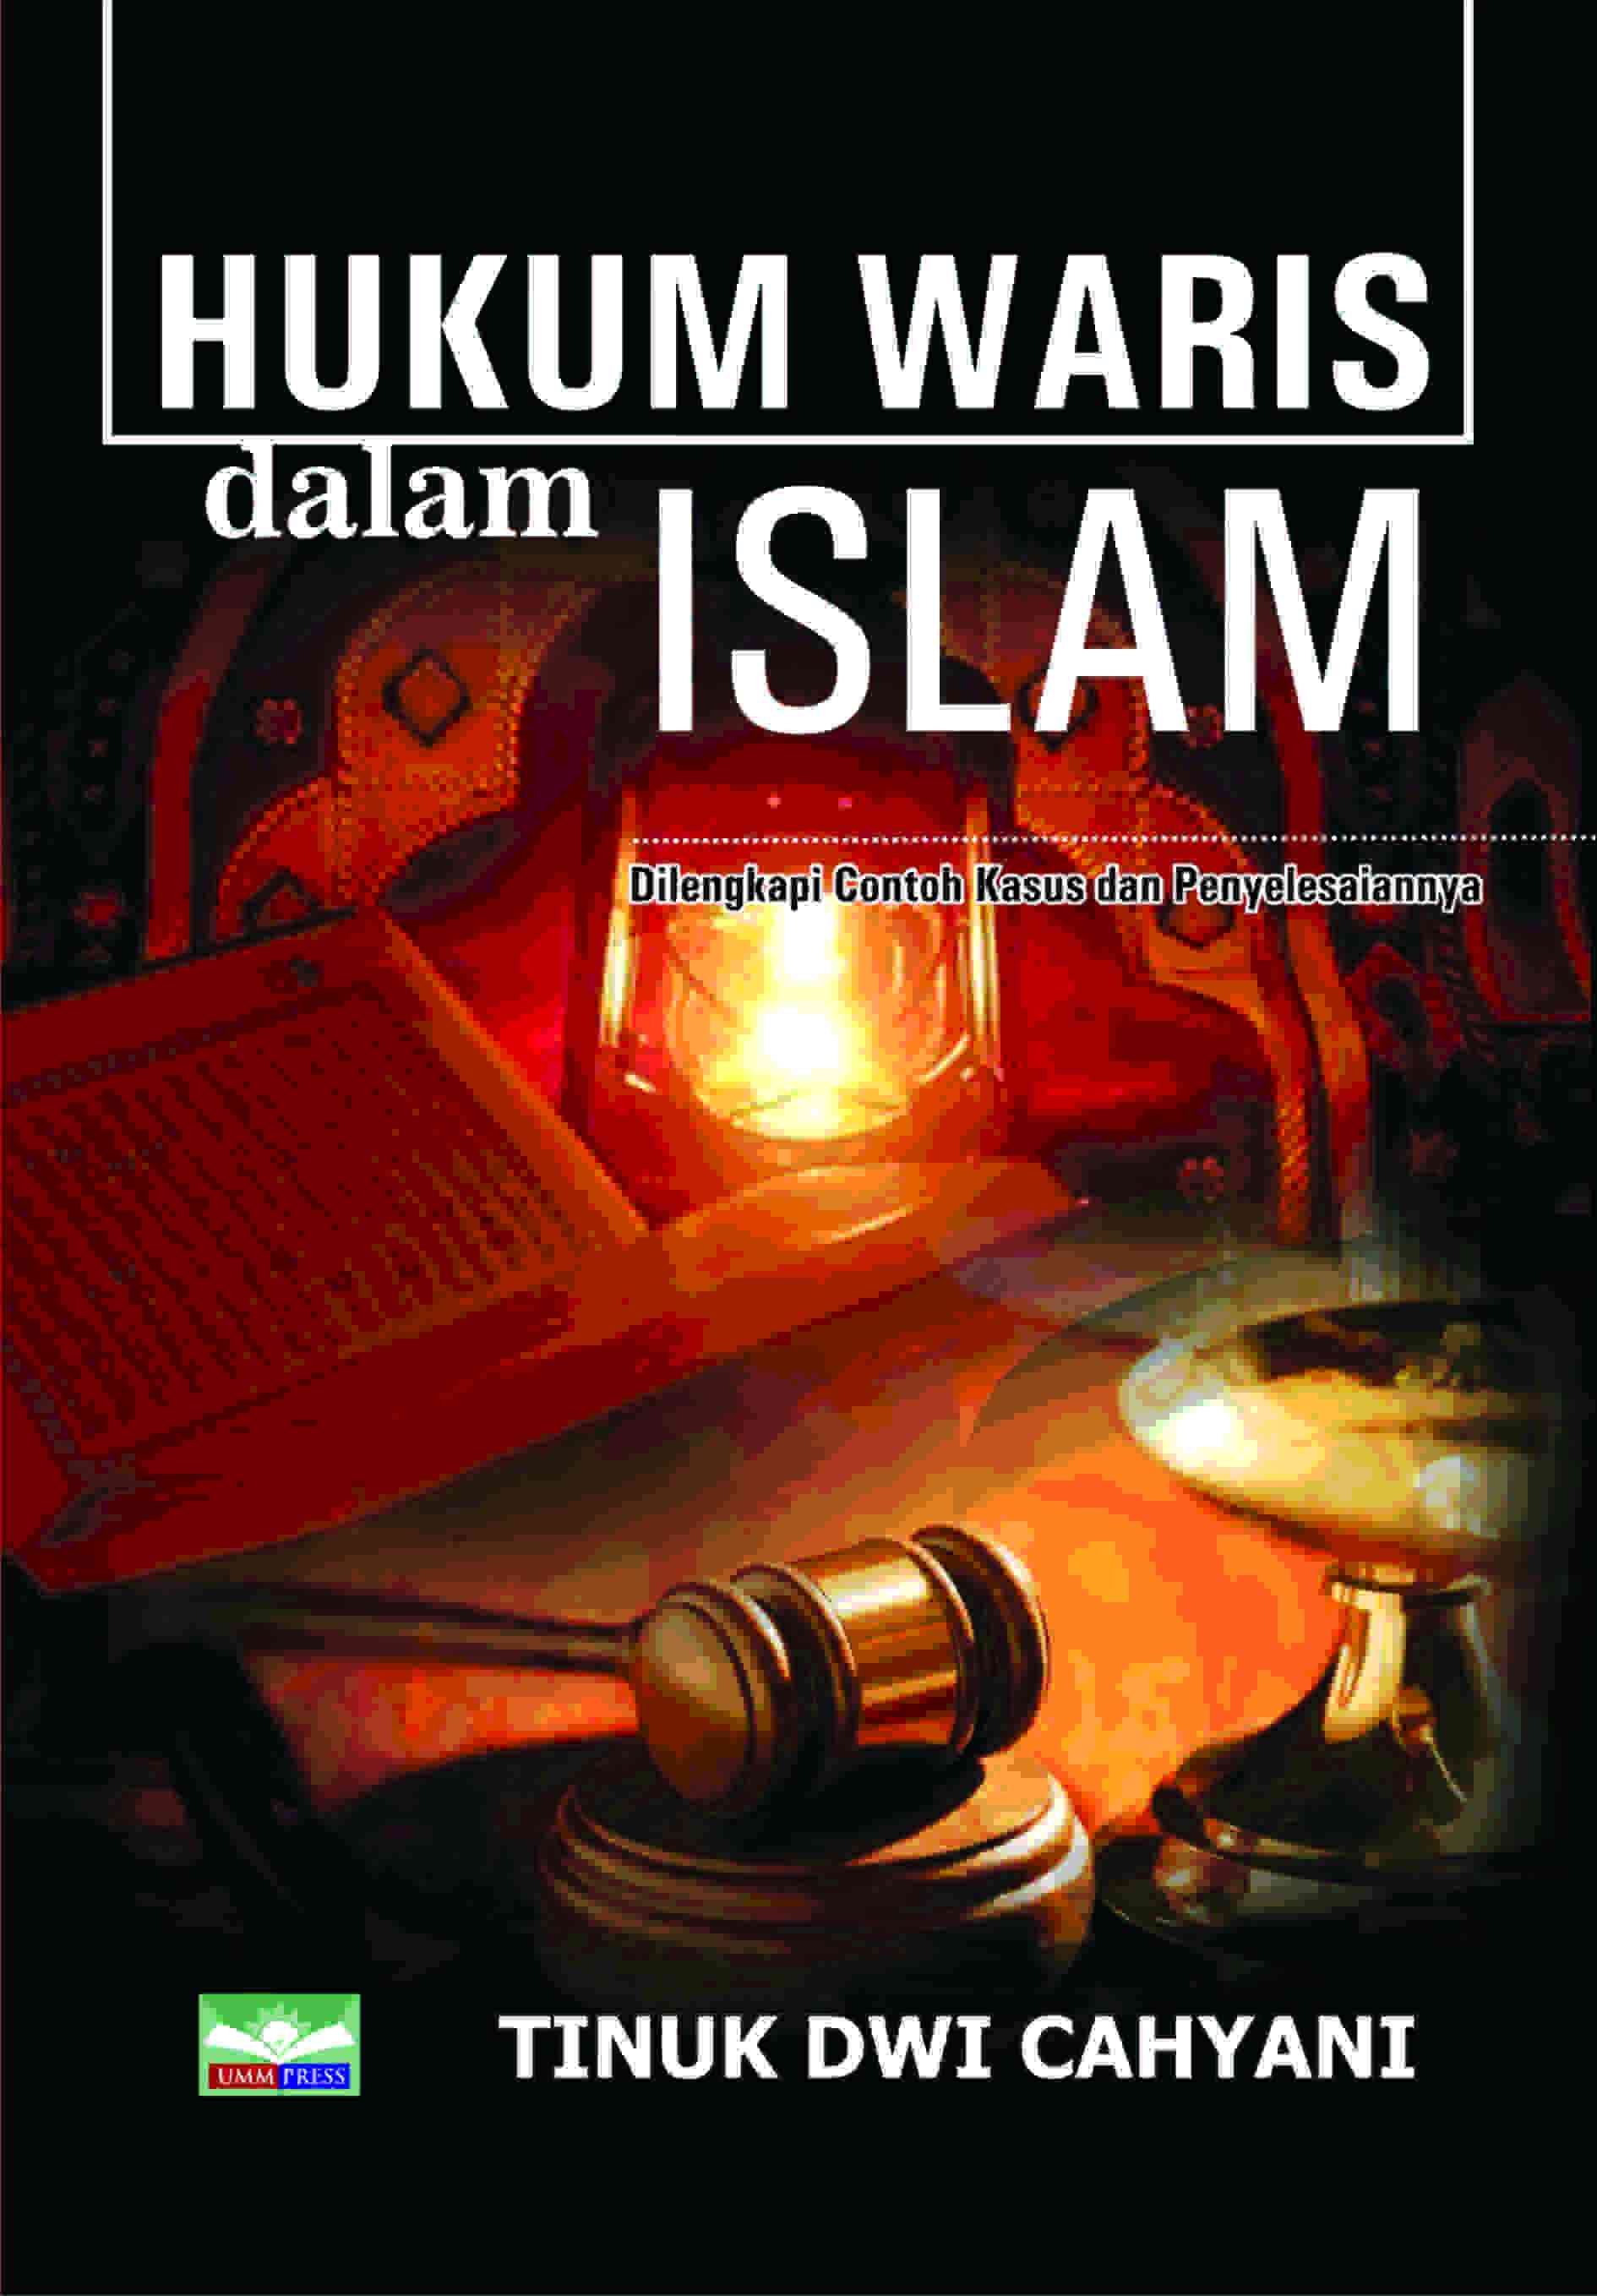 HUKUM WARIS DALAM ISLAM: DILENGKAPI CONTOH KASUS DAN PENYELESAINNYA